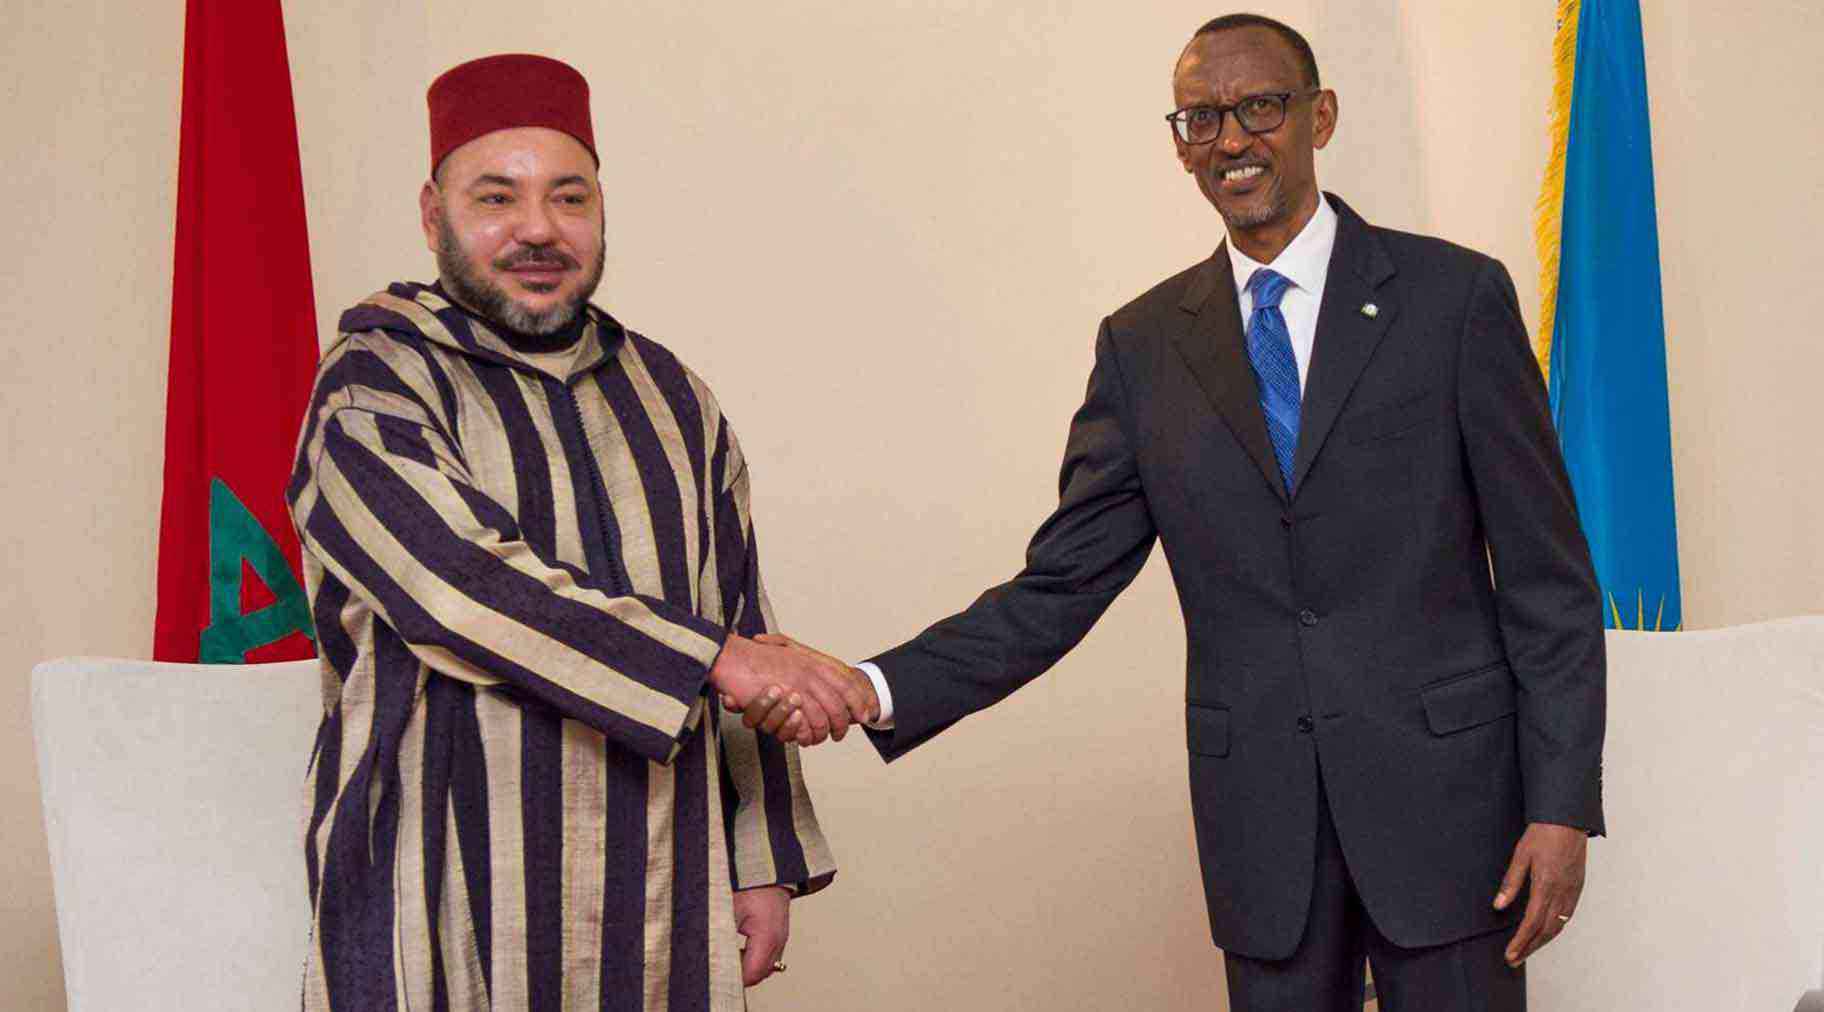 King Mohammed VI of Morocco greeting Paul Kagamé, president of Rwanda. 